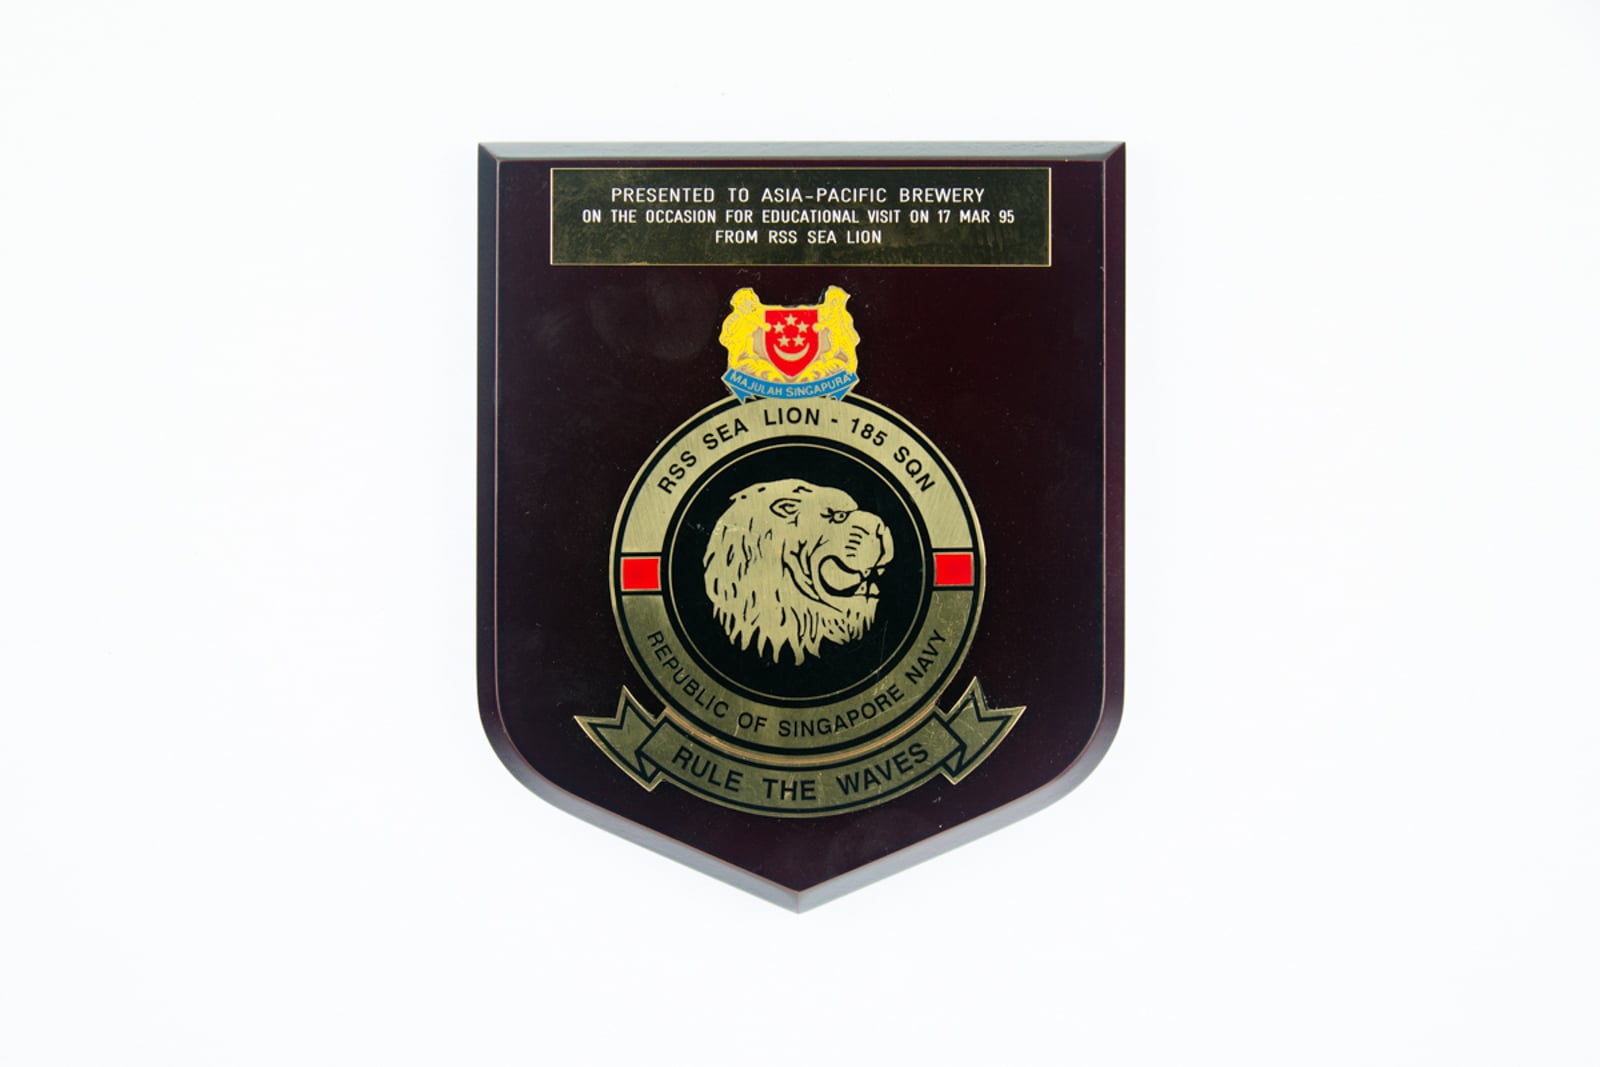 RSS Sea Lion - 185 Squadron Plaque 1995